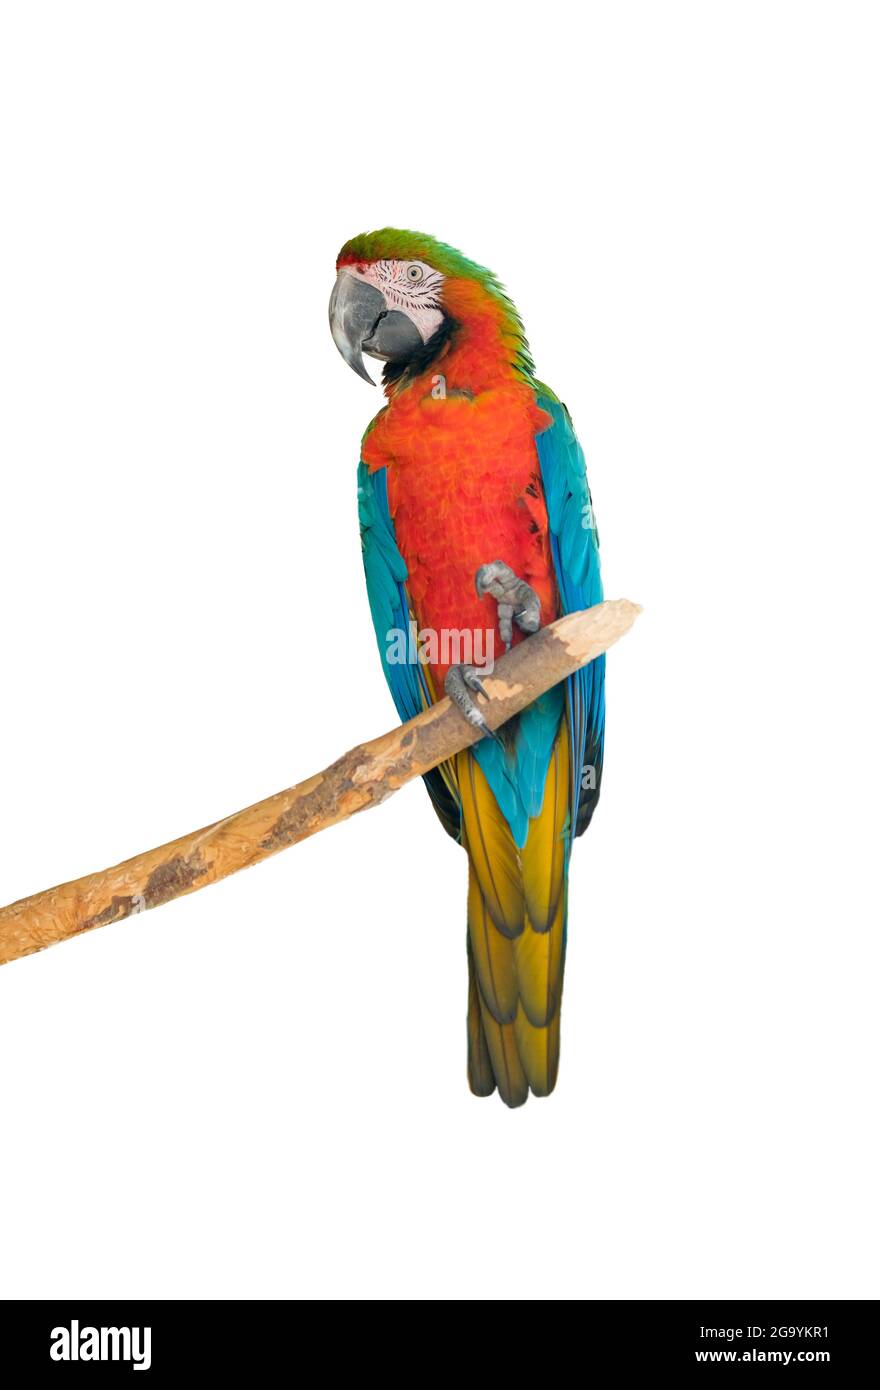 Grande belle perroquet rouge macaw Ara macao. Portrait d'un perroquet isolé sur fond blanc. Photo de haute qualité Banque D'Images